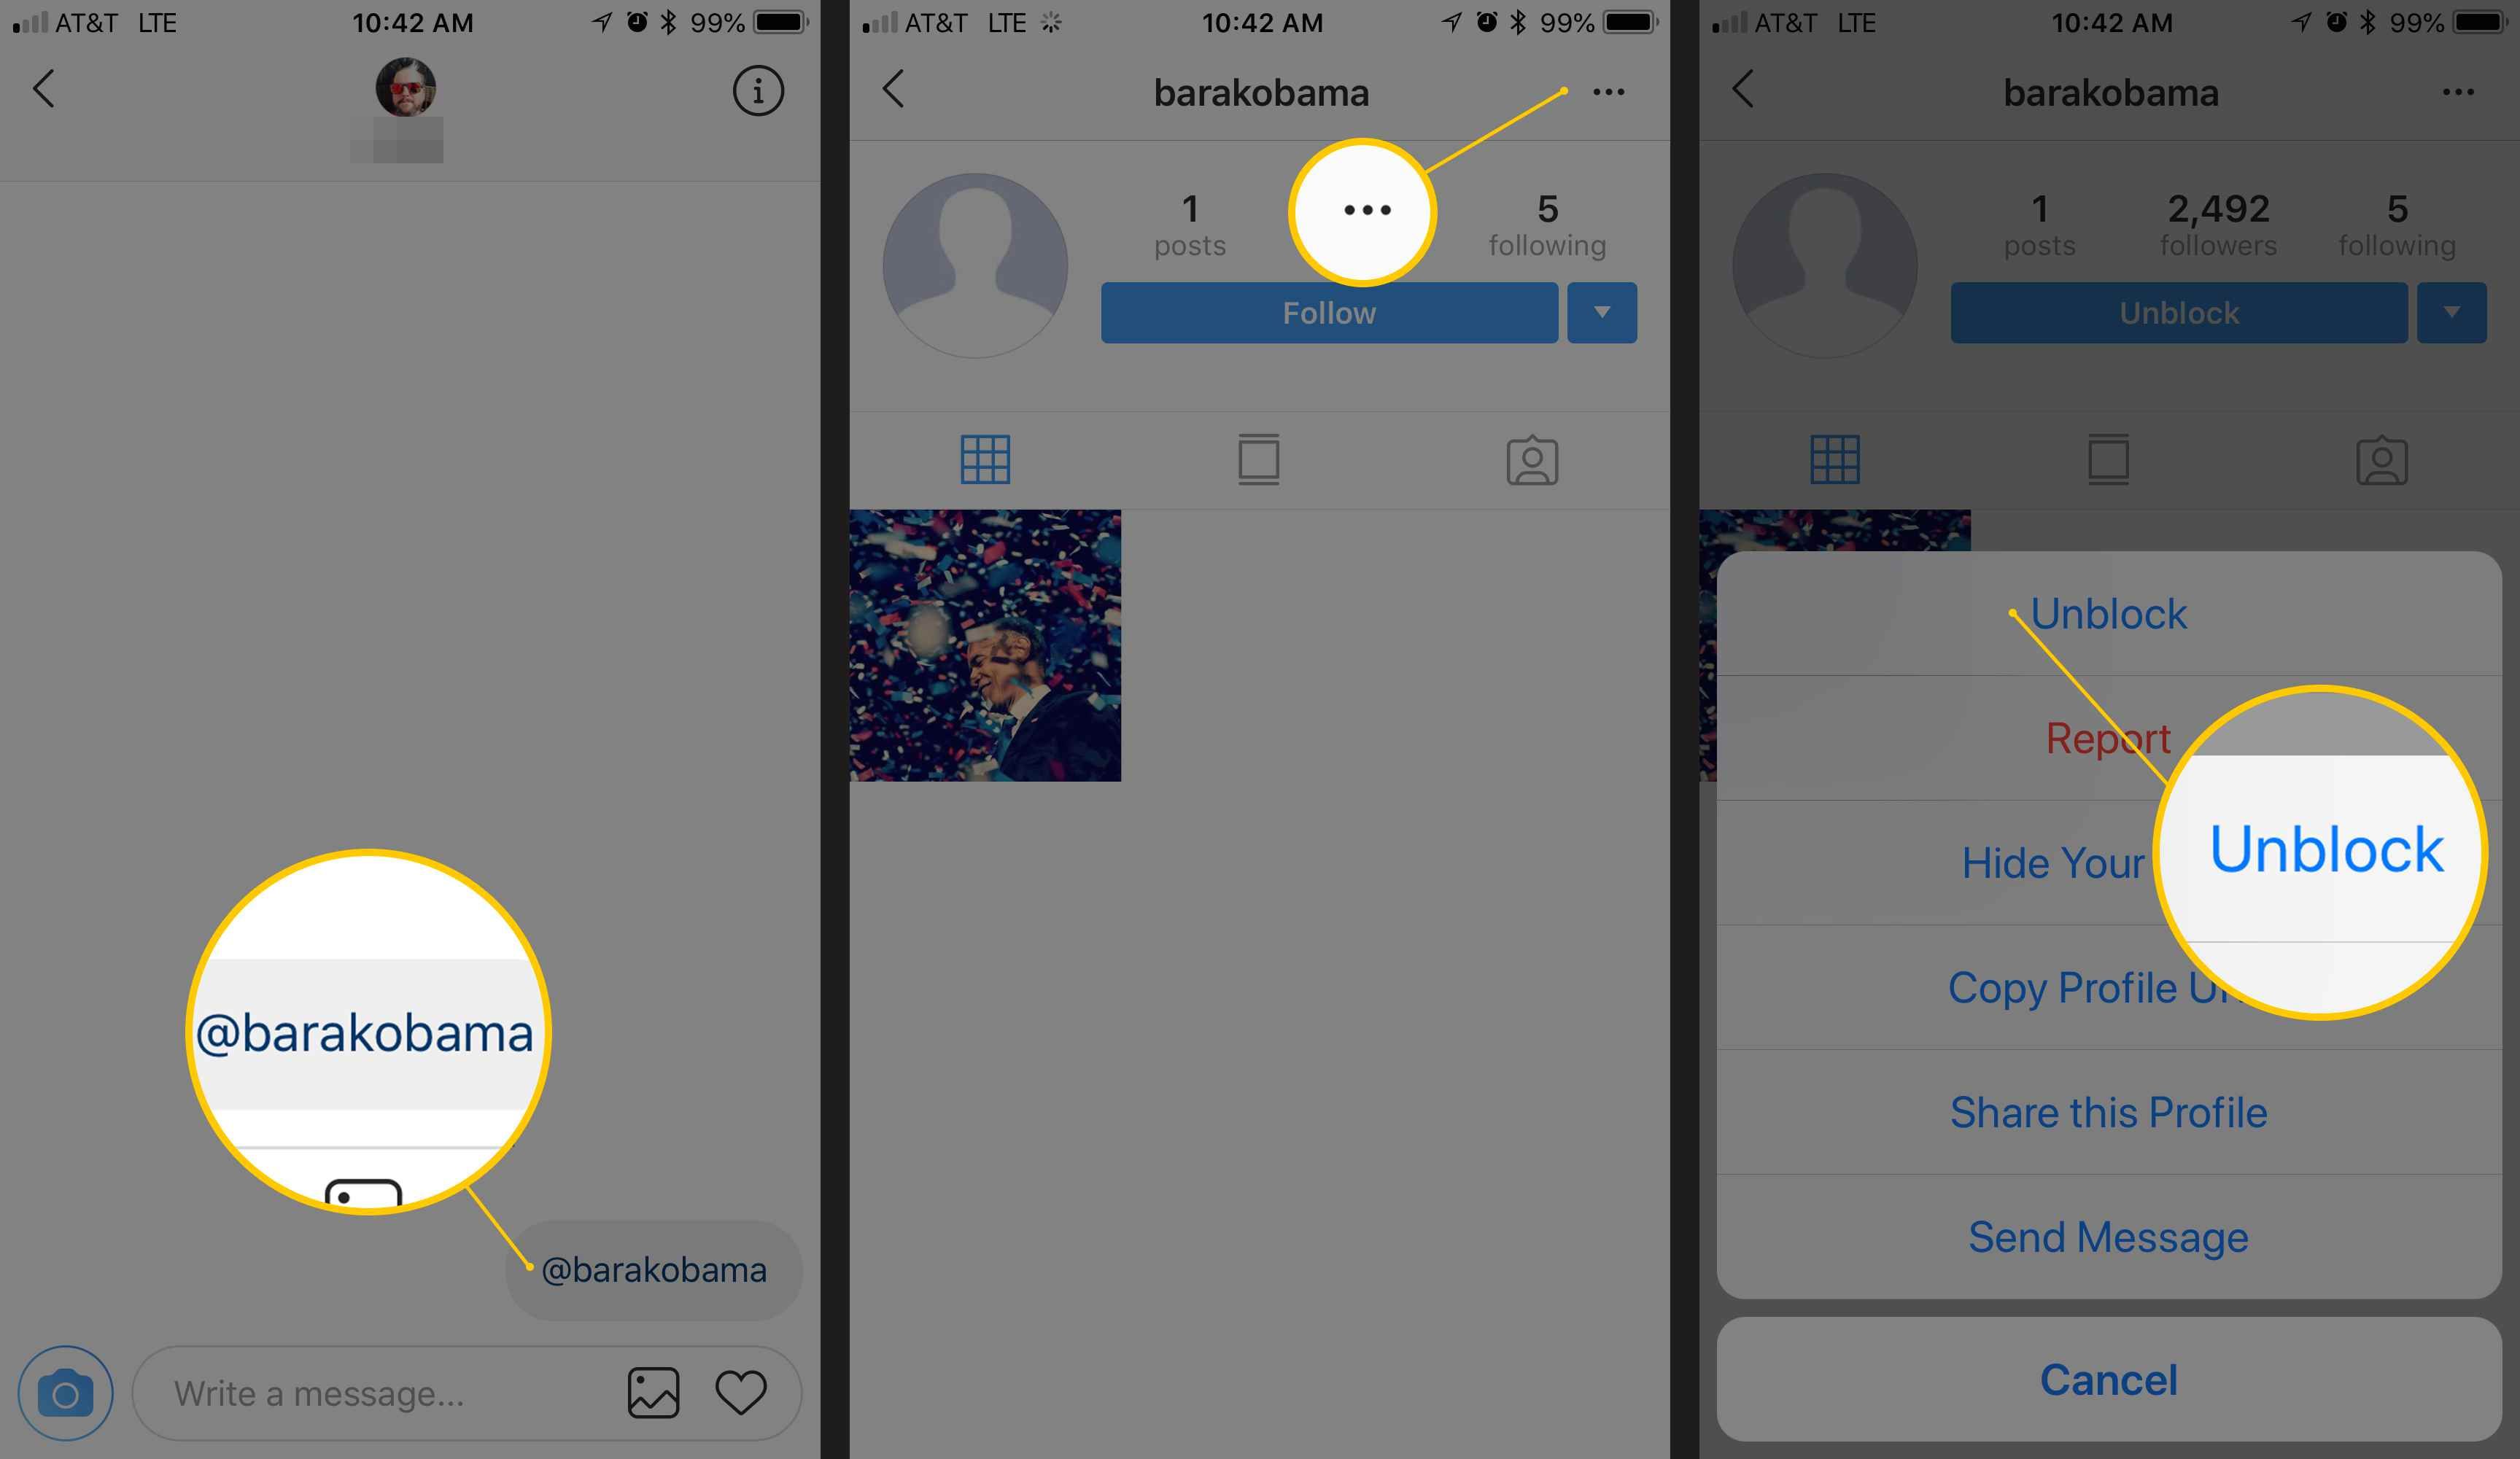 Скриншоты Instagram на iOS, показывающие прямые сообщения, кнопки профиля пользователя и инструмент разблокировки